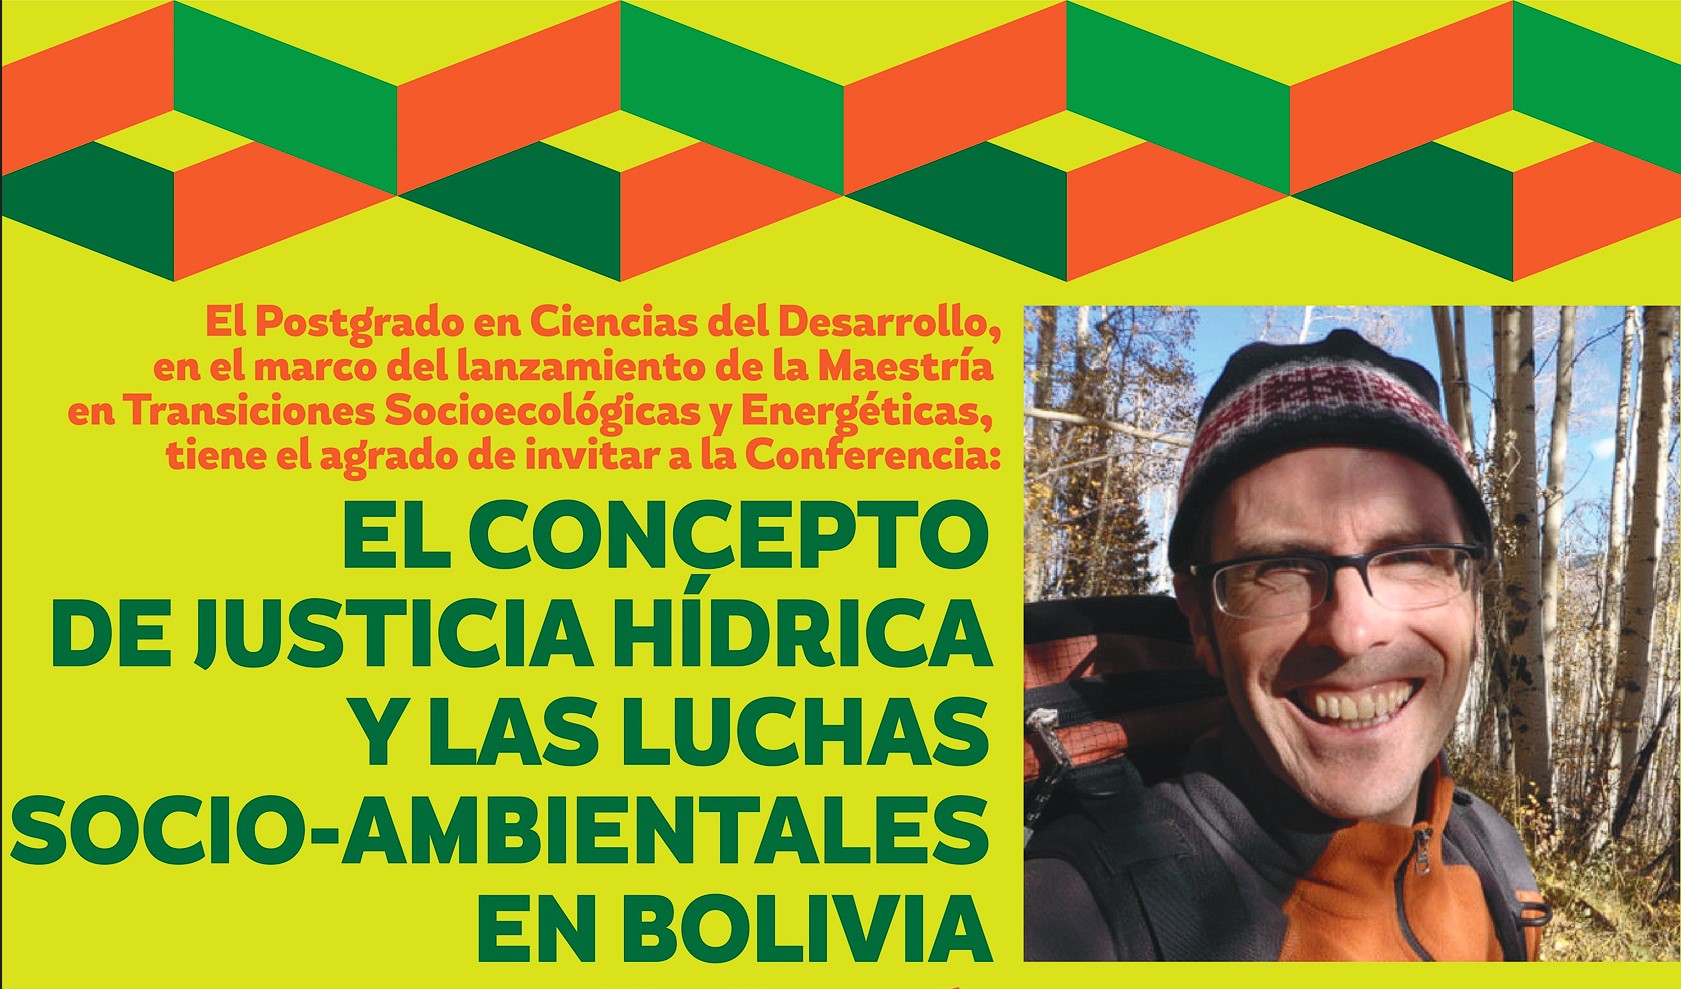 EL CONCEPTO DE JUSTICIA HIDRICA Y LAS LUCHAS SOCIO-AMBIENTALES EN BOLIVIA 